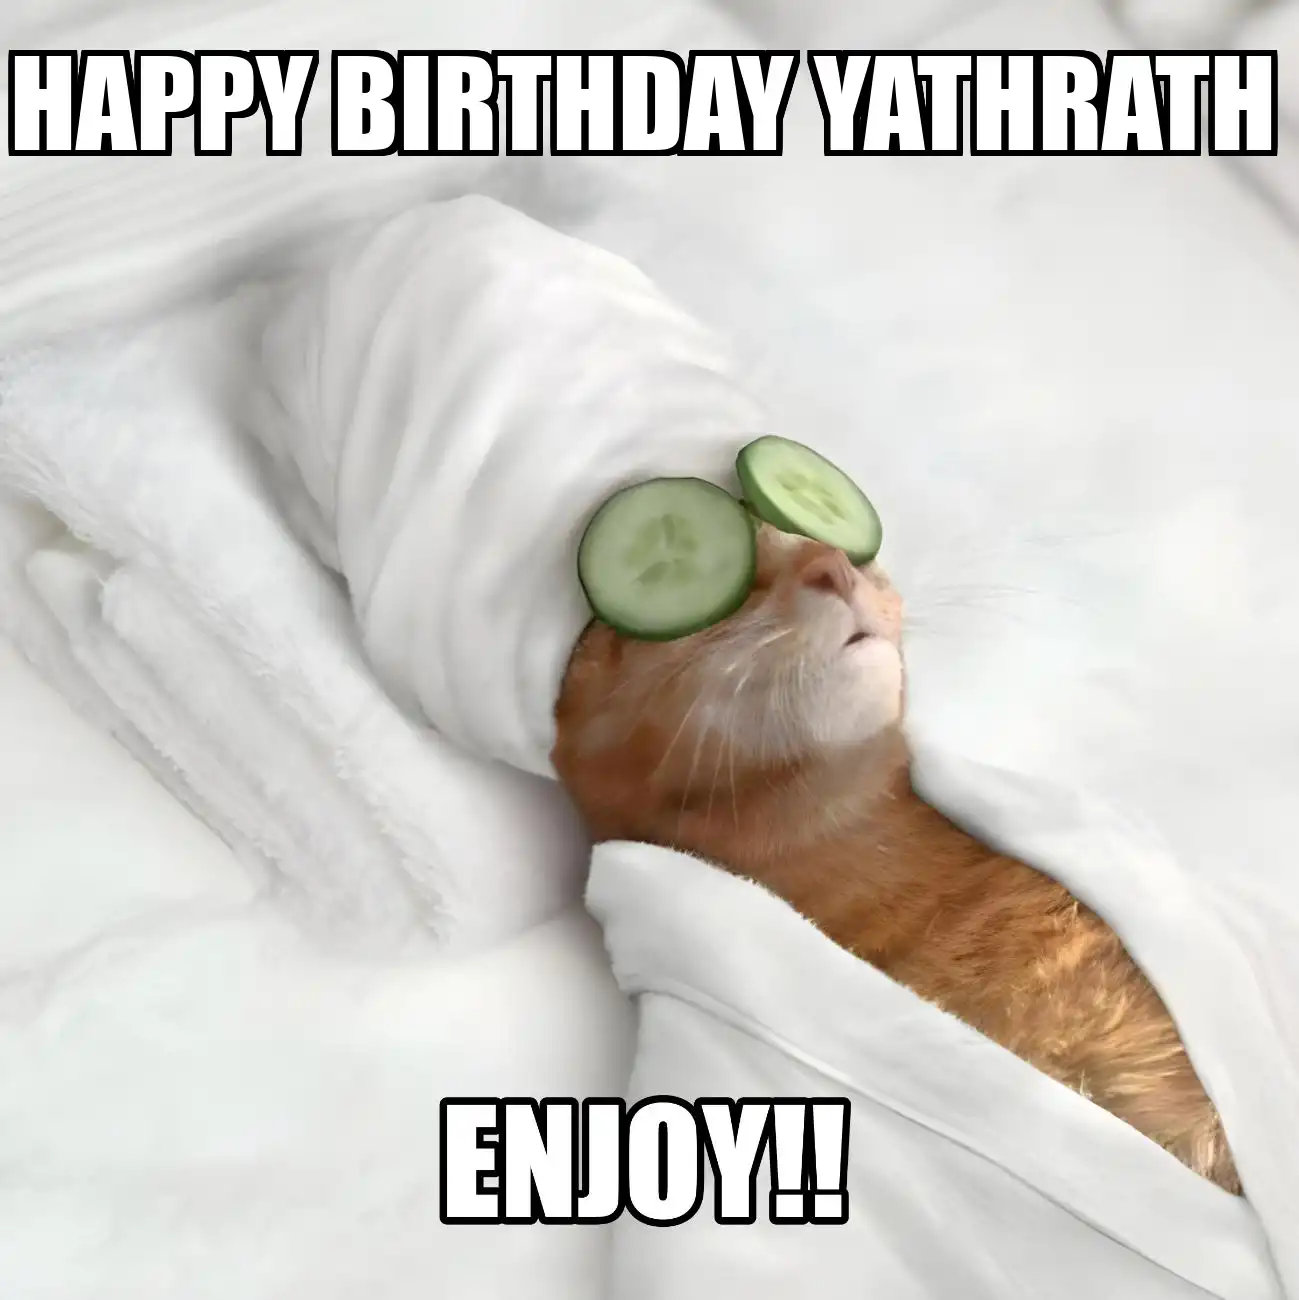 Happy Birthday Yathrath Enjoy Cat Meme